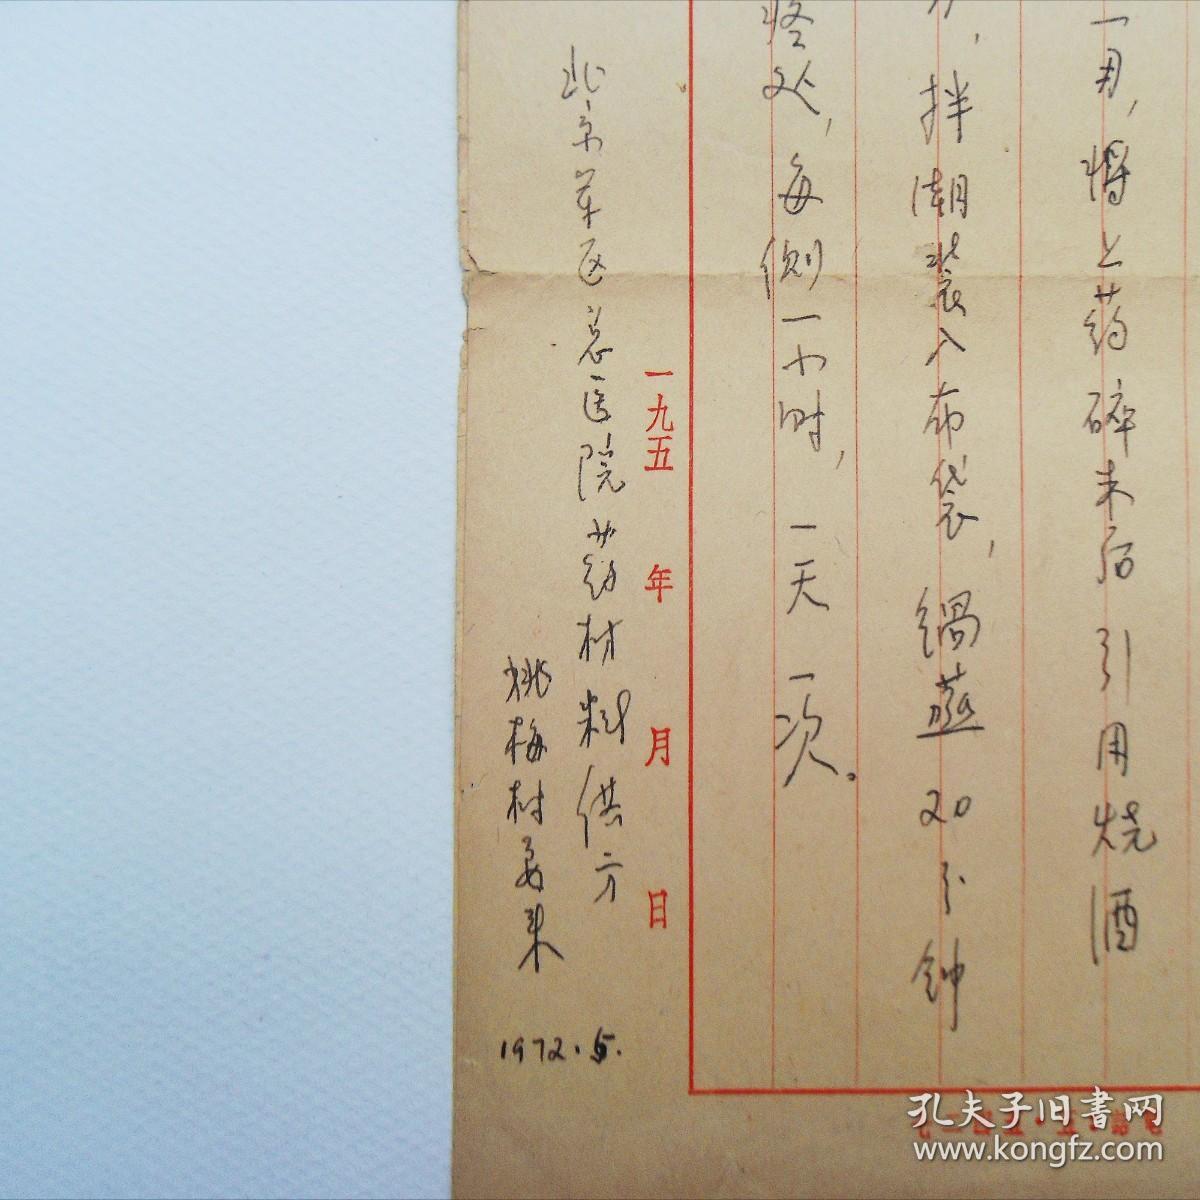 72年老中医手稿处方：《治骨质增生外敷药》，北京军医总医院药材科供方。（用的是50年代学习杂志社用笺抄的）【部分药方拍照时作了遮盖处理】